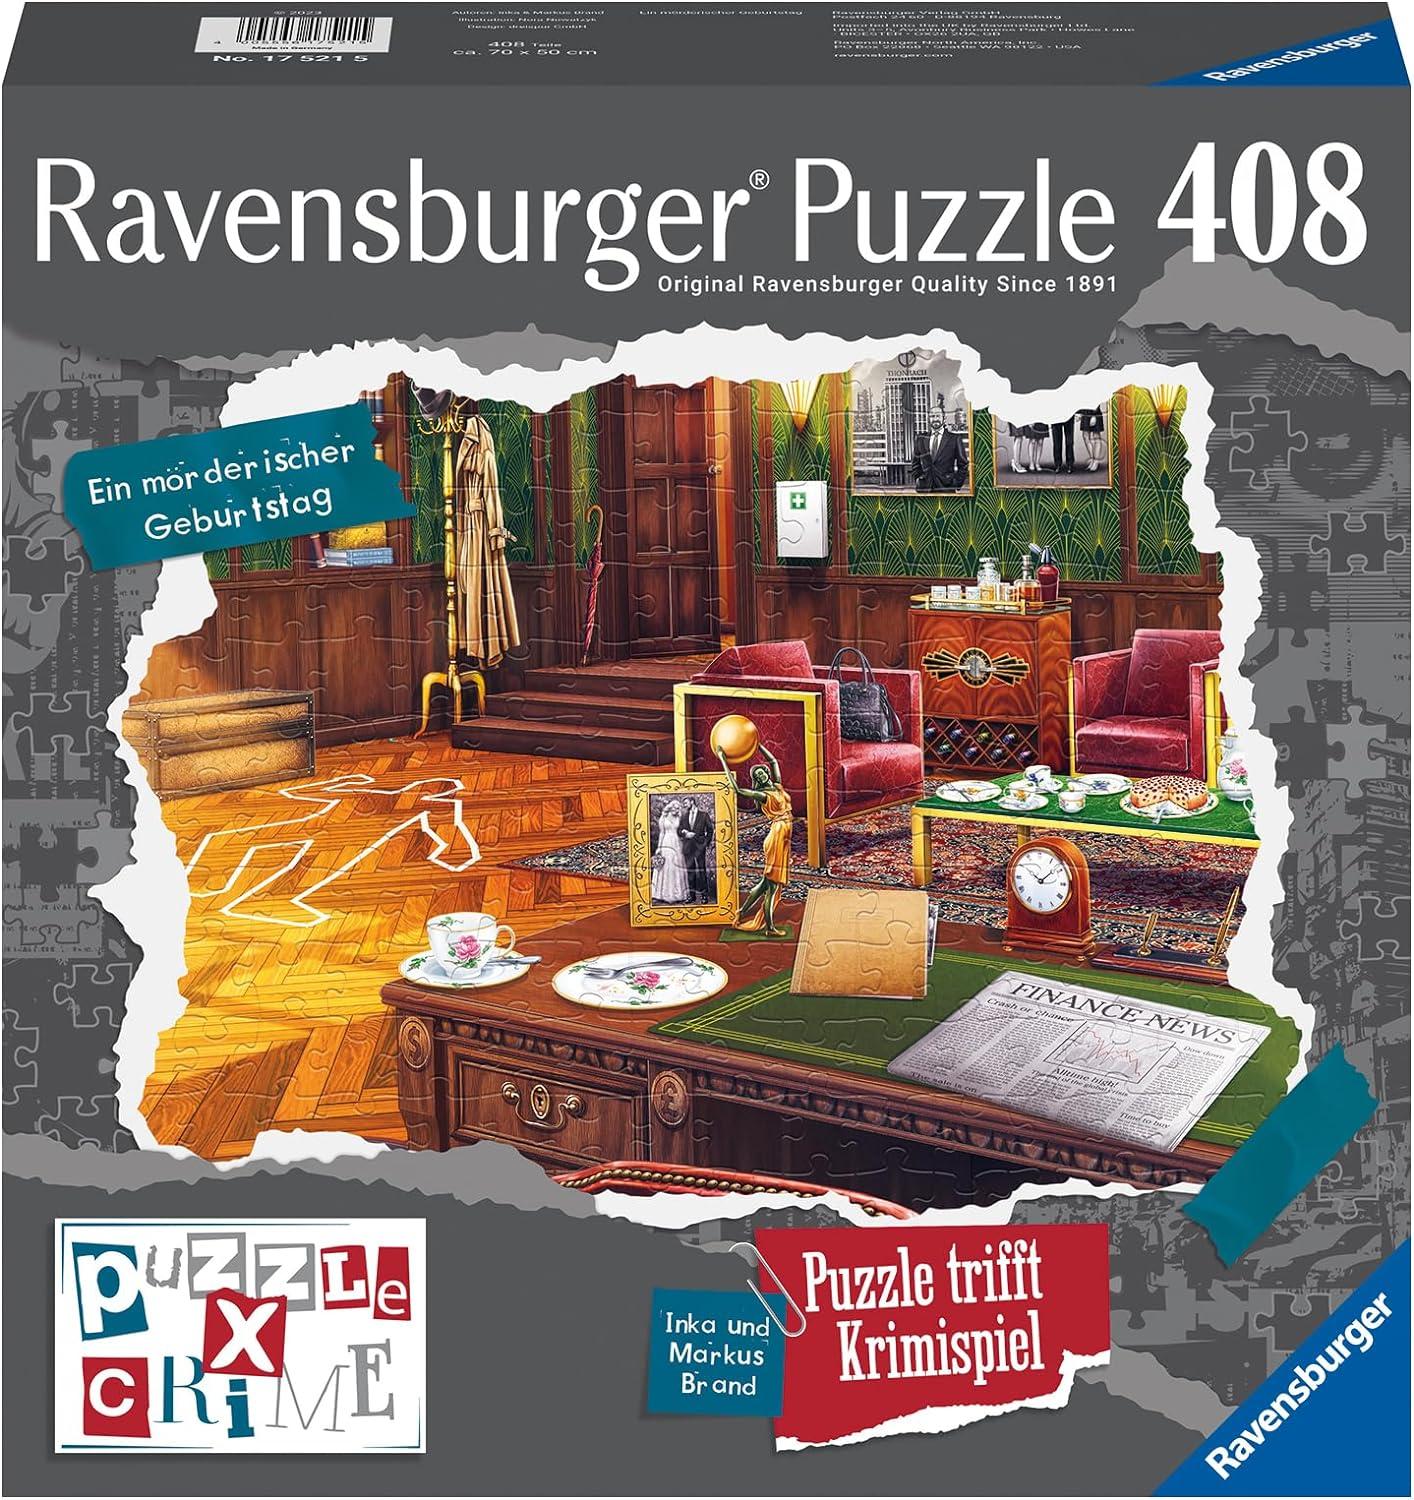 Ravensburger Puzzle X Crime - Ein mörderischer Geburtstag